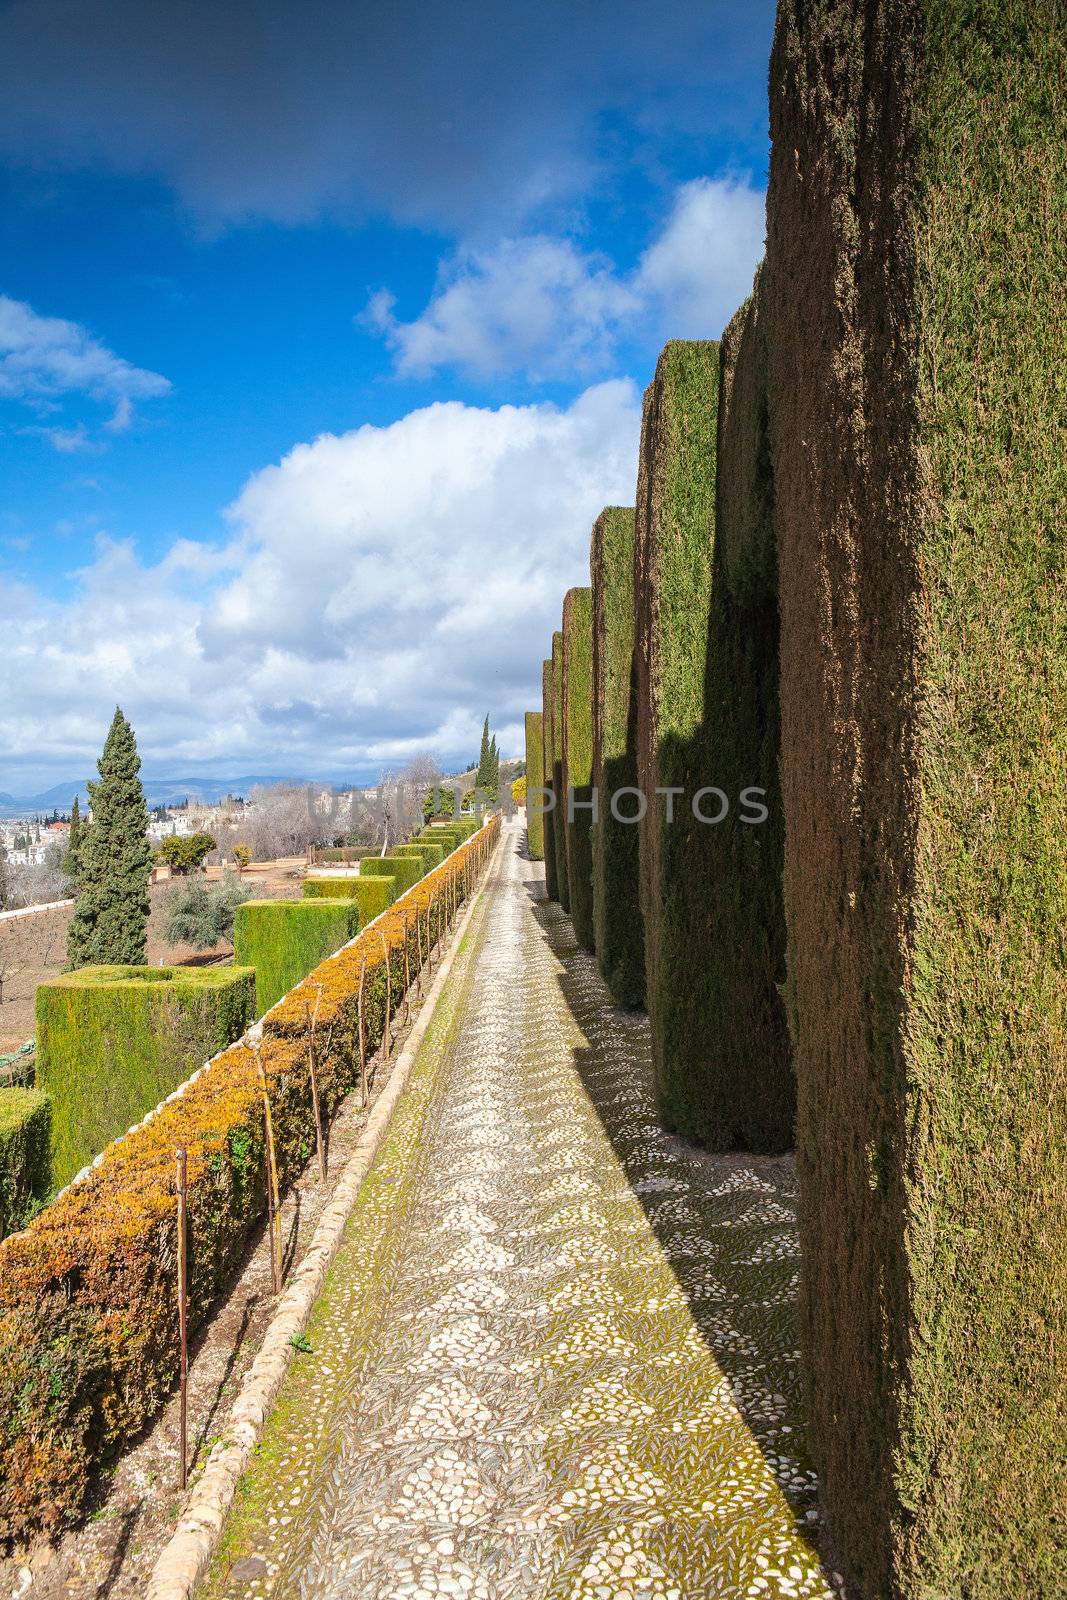 Gardens of La Alhambra in Granada, Spain